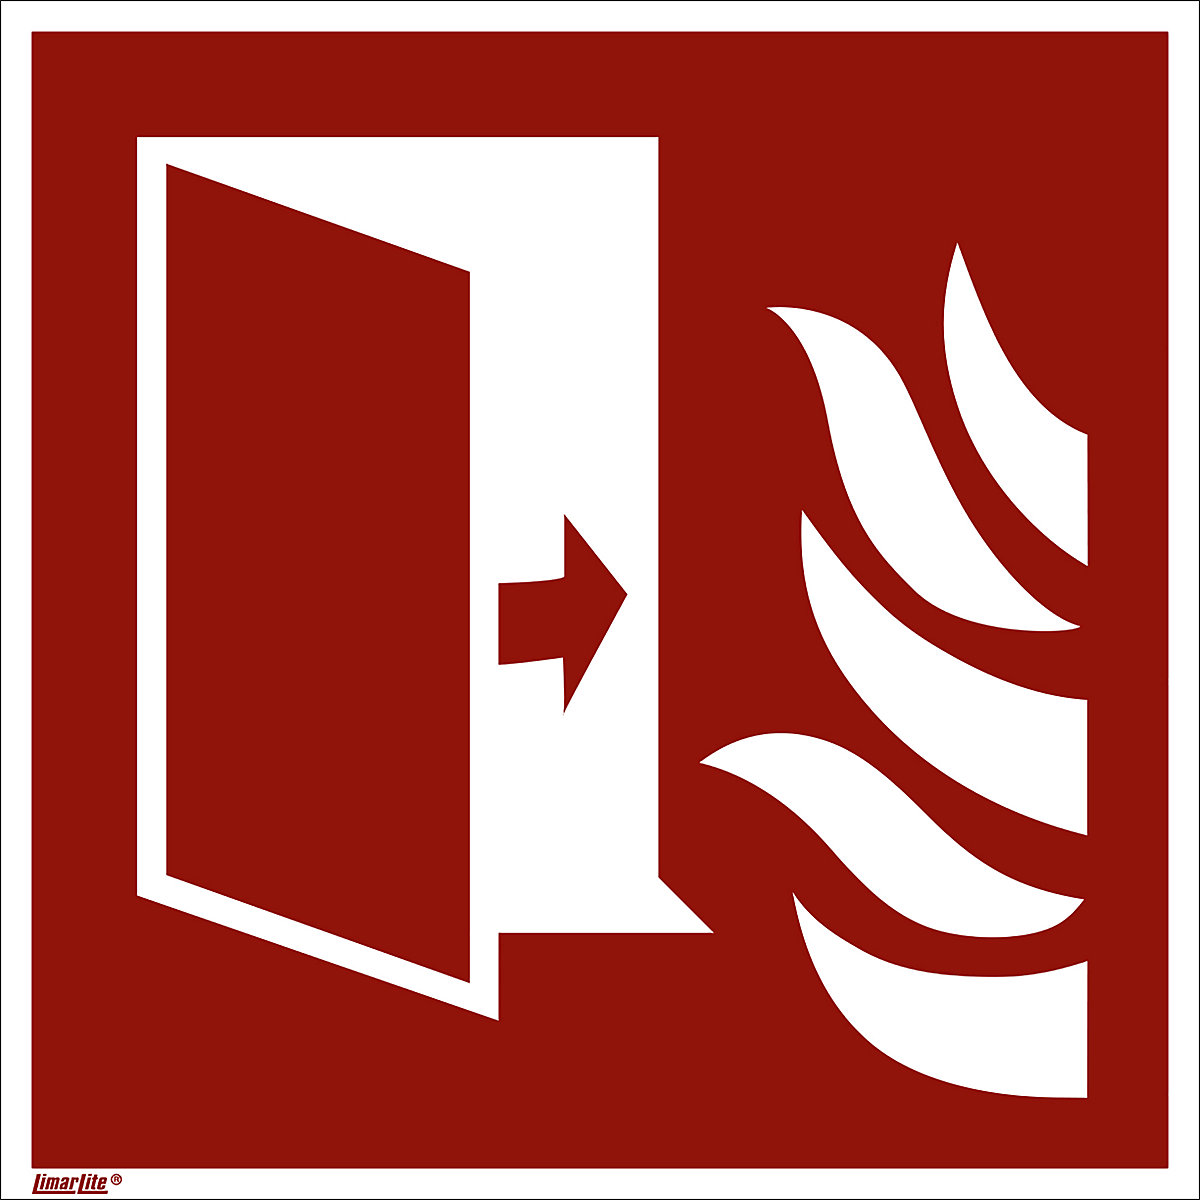 Značka pro ochranu proti požáru, protipožární dveře, bal.j. 10 ks, fólie, 200 x 200 mm